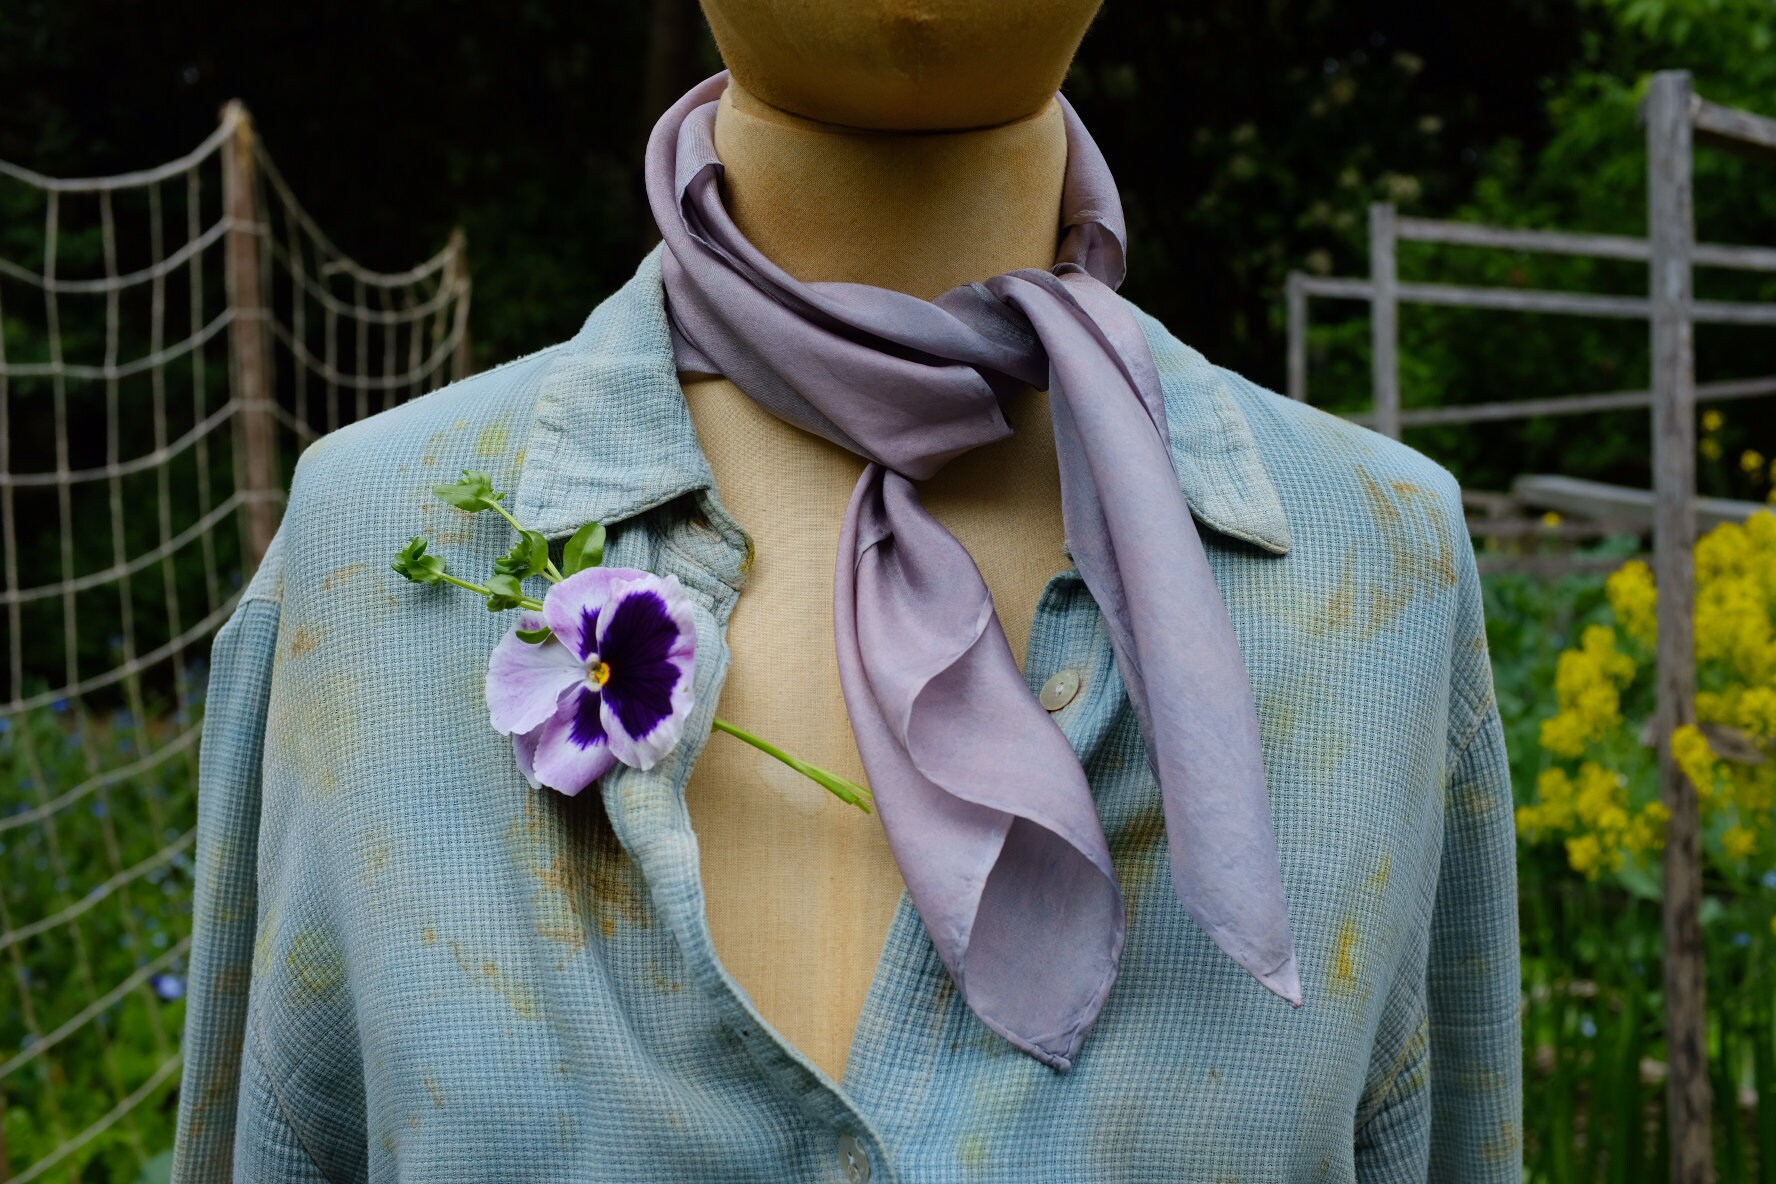 Logwood Natural Dye Kit for 0.45lb Fabric, Violet Purple Color, Natural Dye,  Fabric Dye, Tie Dye, Mordant, Diy, Plant, Batic, Botanical, 09 